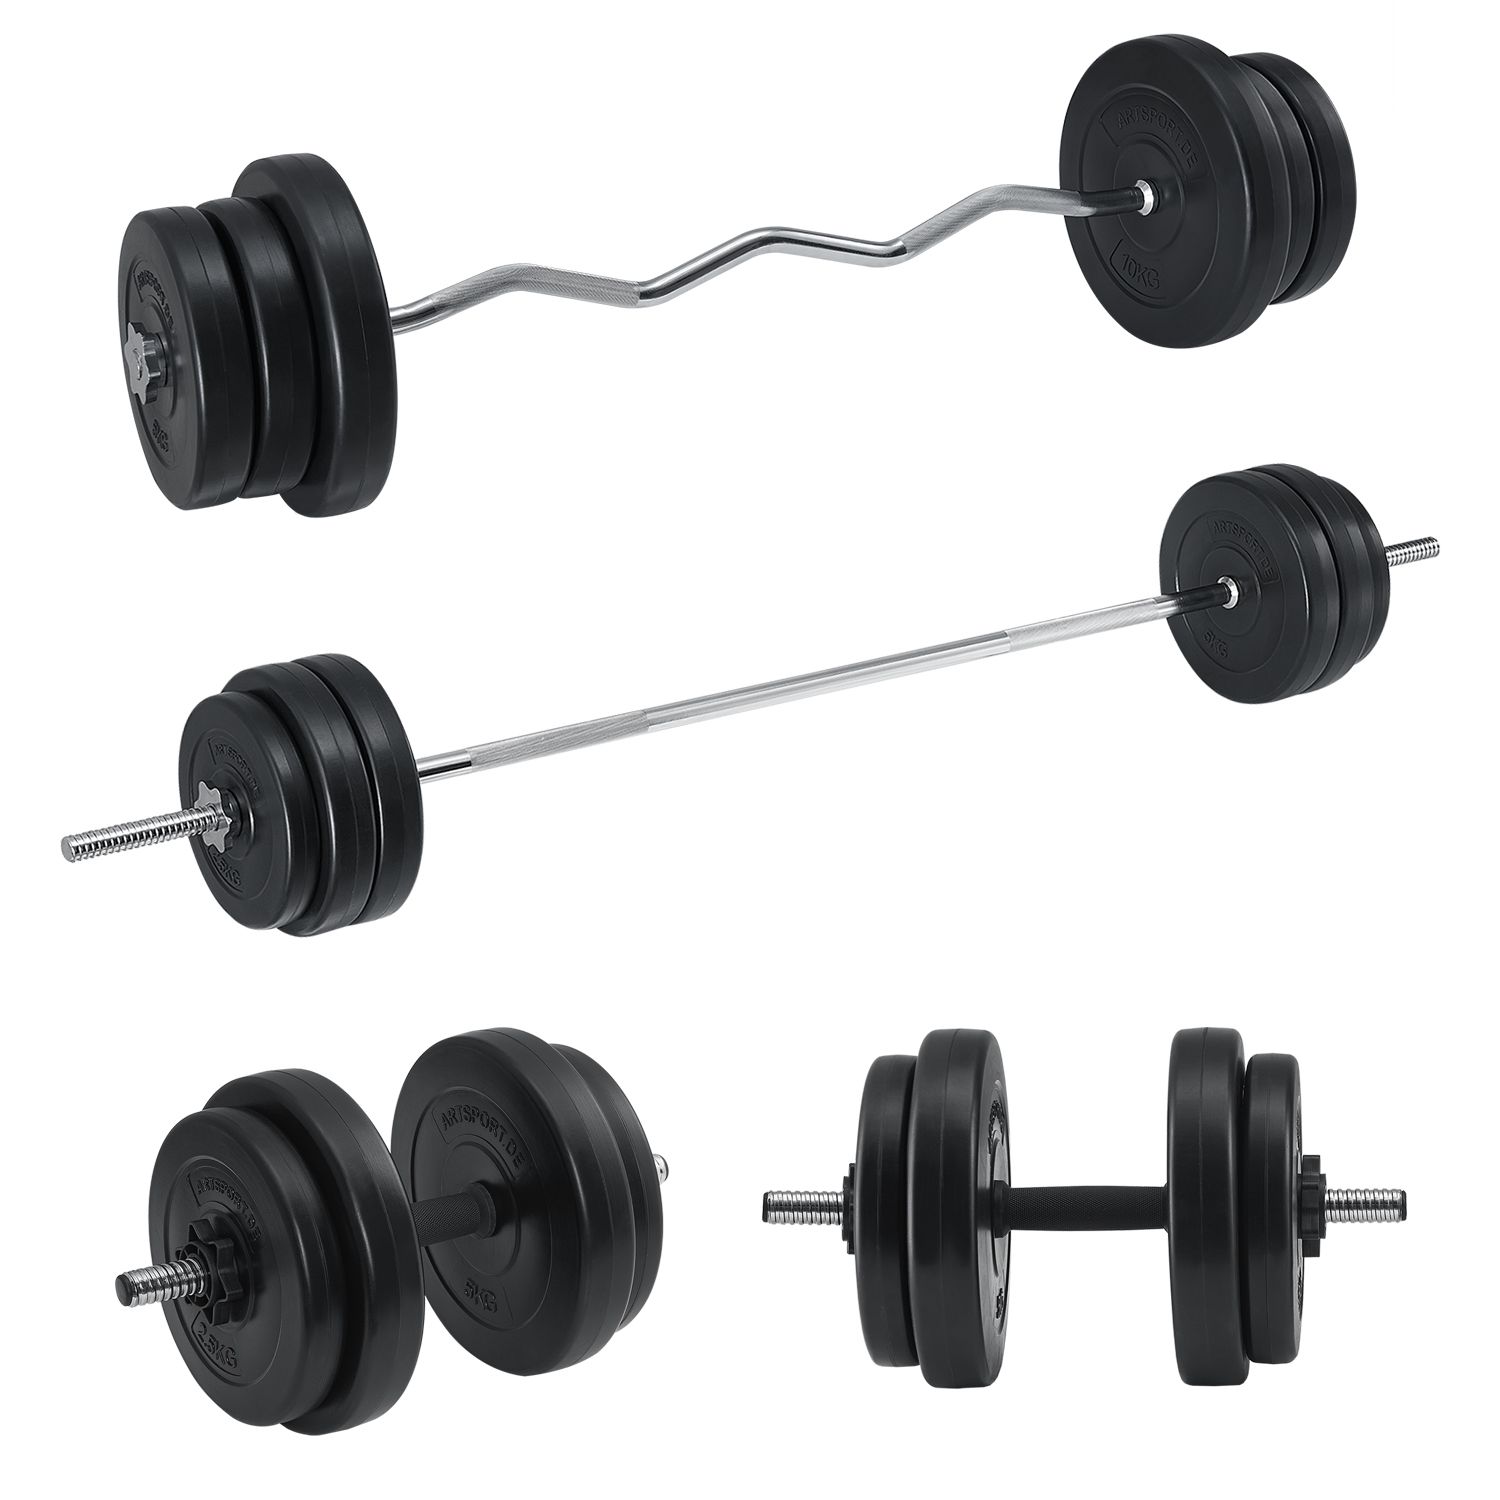 2x Hantelgriffe Bars Anti-Rutsch-Langhantel Gym Training Workout Sportausrüstung 